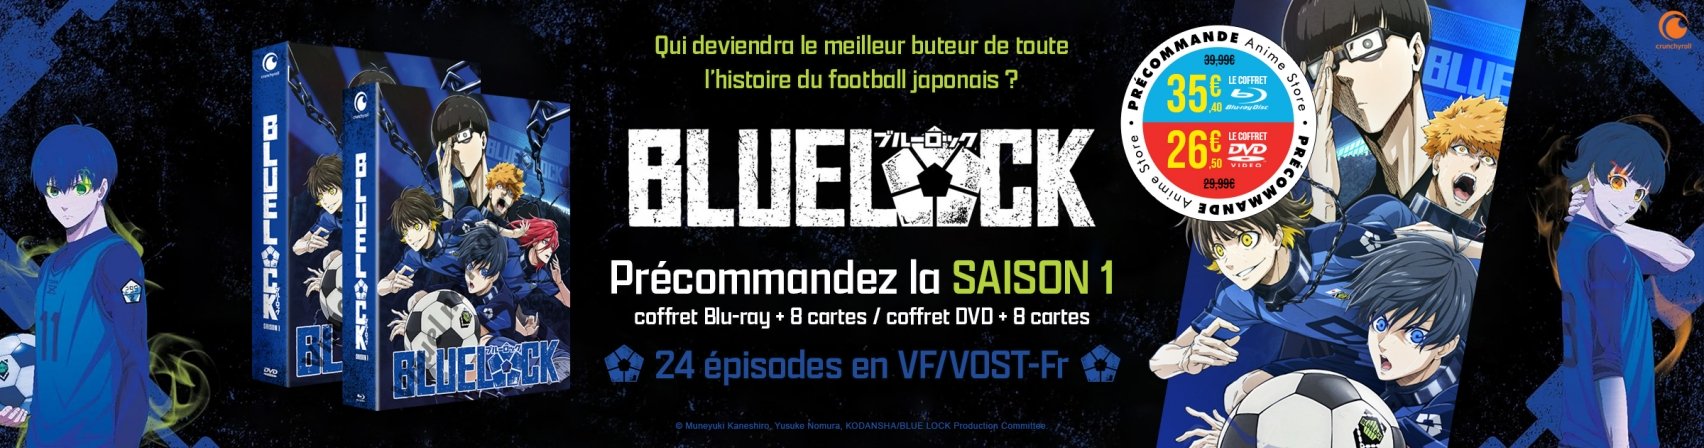 Prcommandez Blue Lock saison 1 en BR et DVD